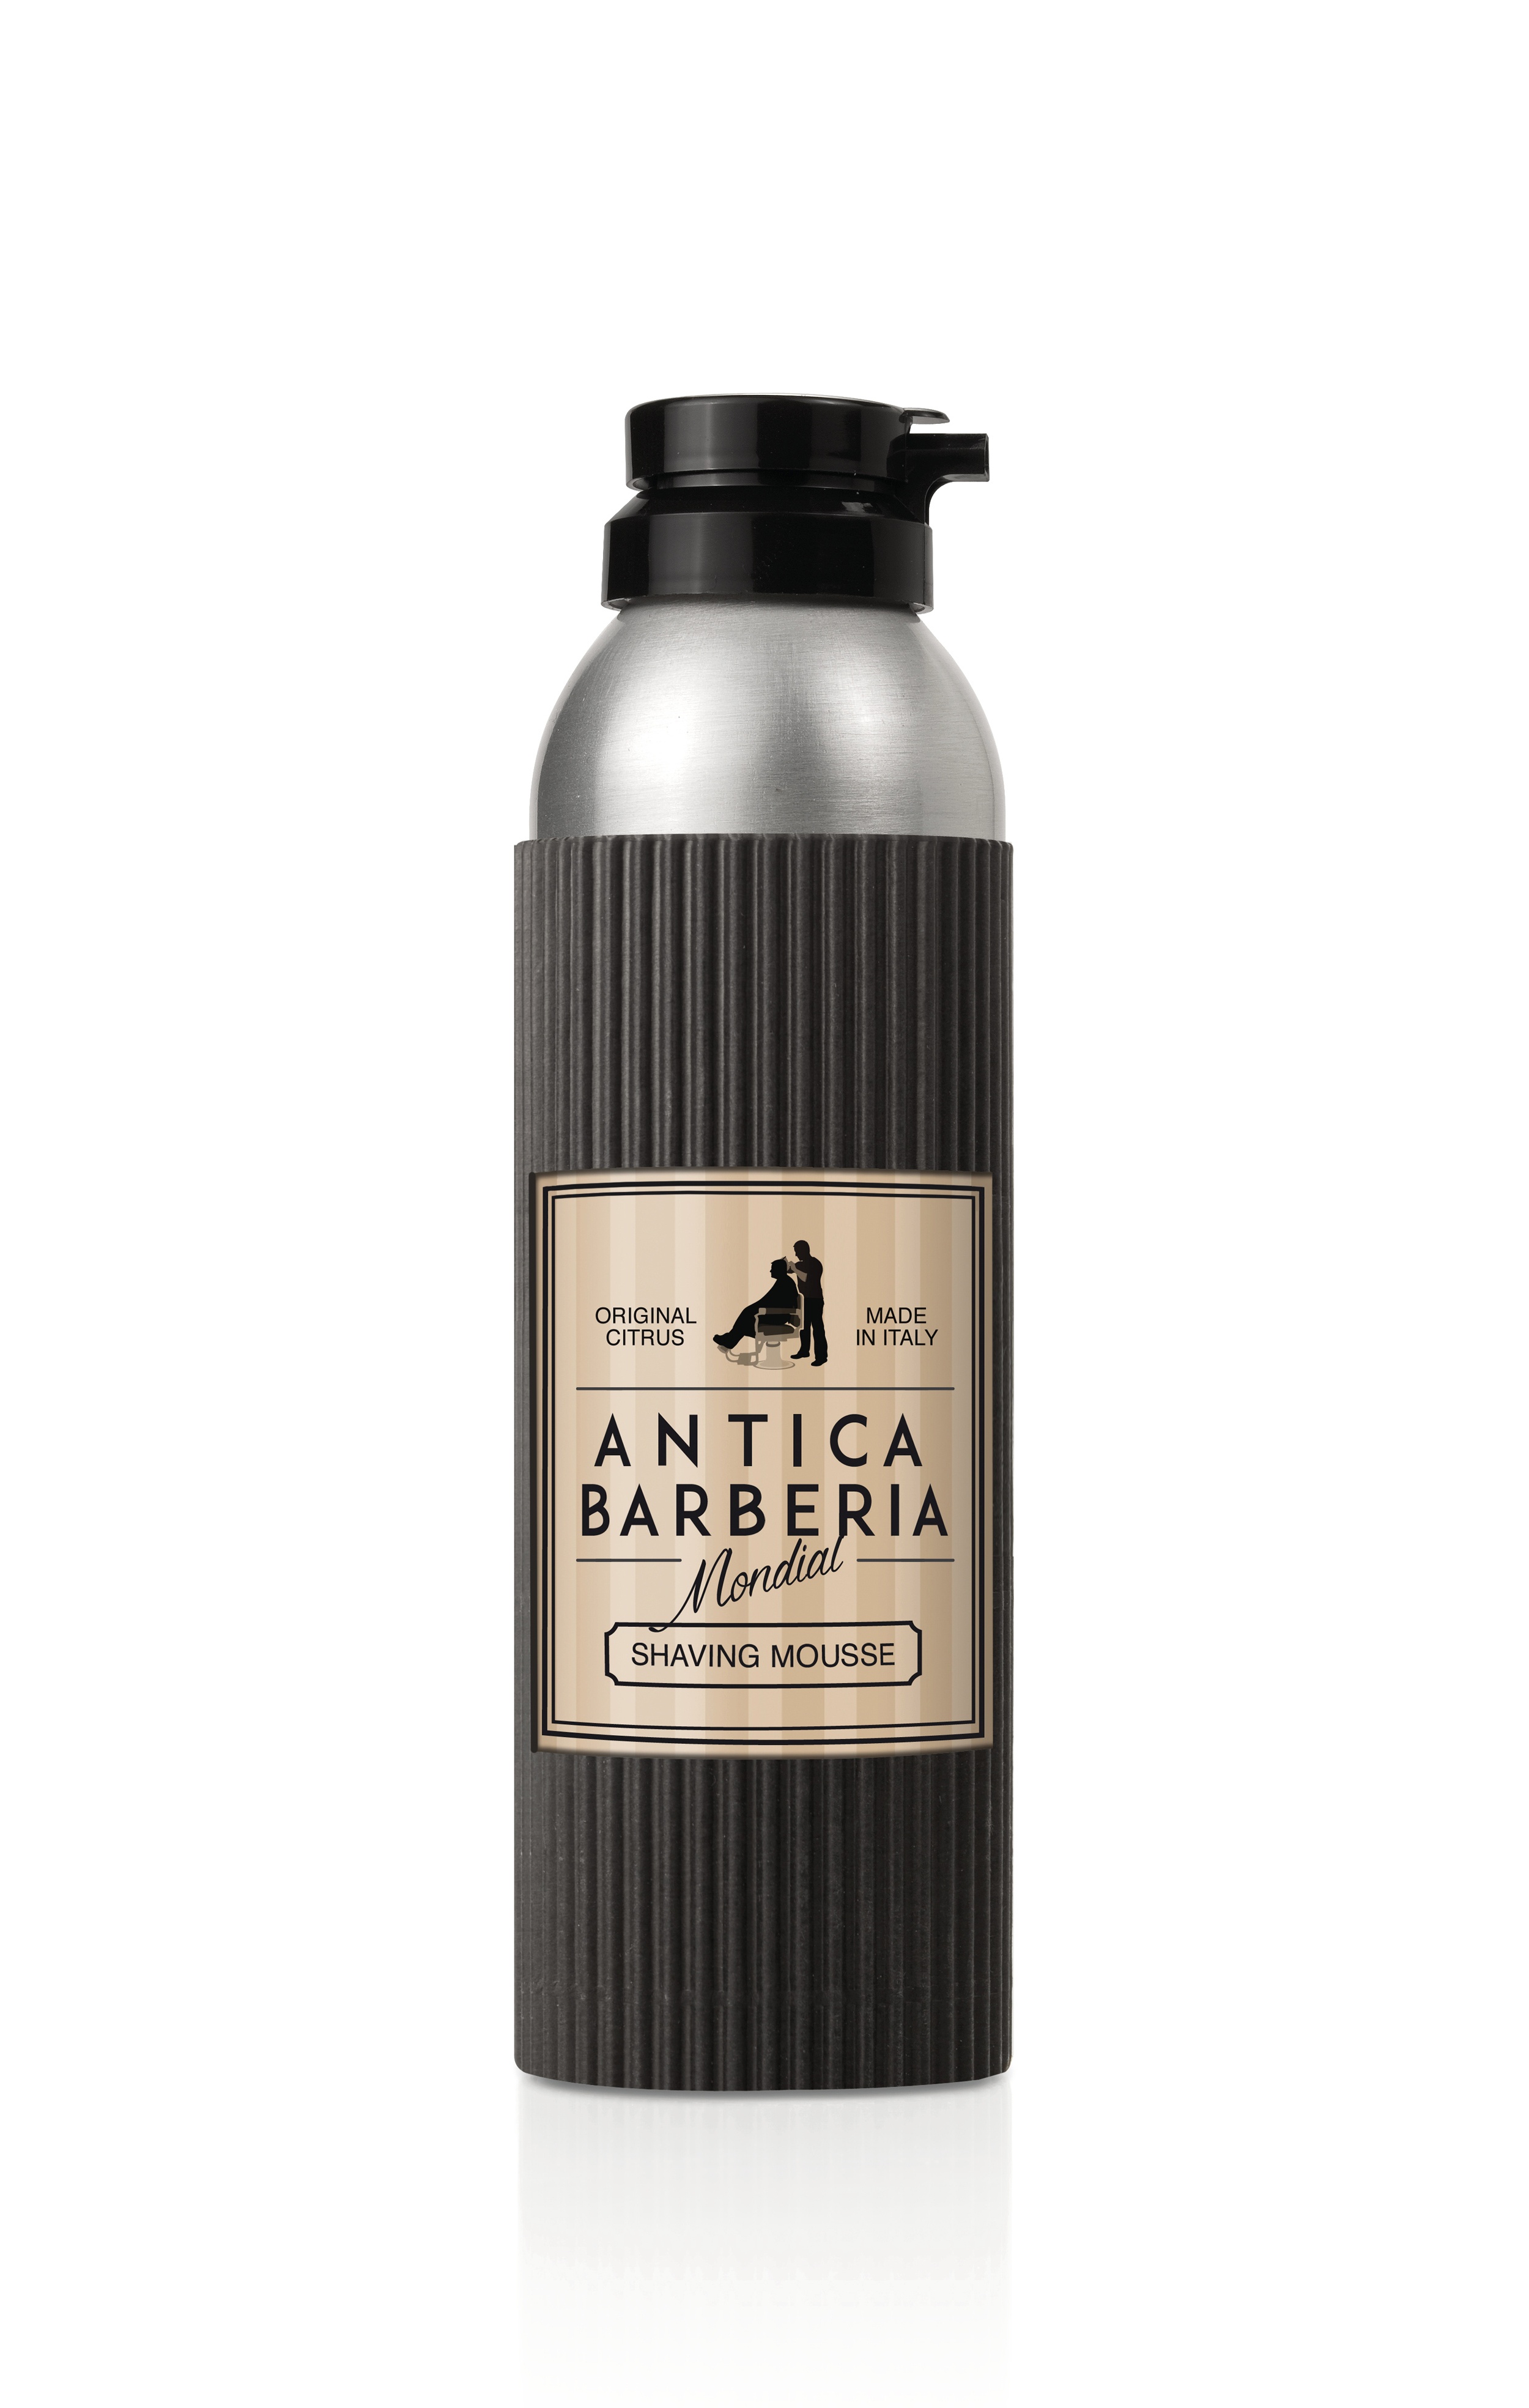 Пена для бритья Mondial Antica Barberia ORIGINAL CITRUS, цитрусовый аромат, 200 мл citrus bomb